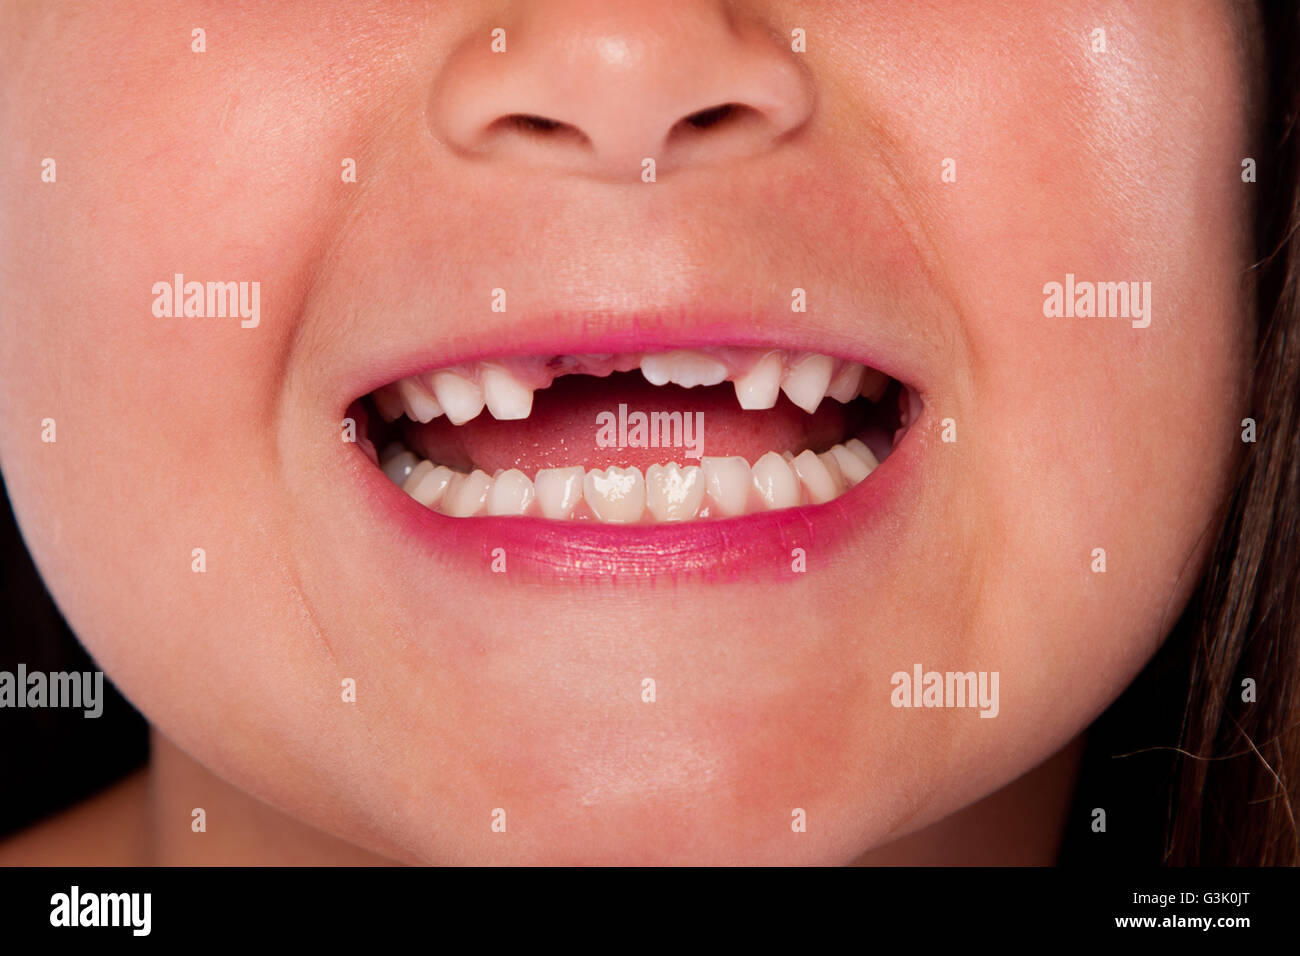 Glücklich, offenem Mund mit fehlenden Zähnen, die Austausch von Milchzahn für Erwachsene Zahn aufwachsen, dental-Konzept. Stockfoto